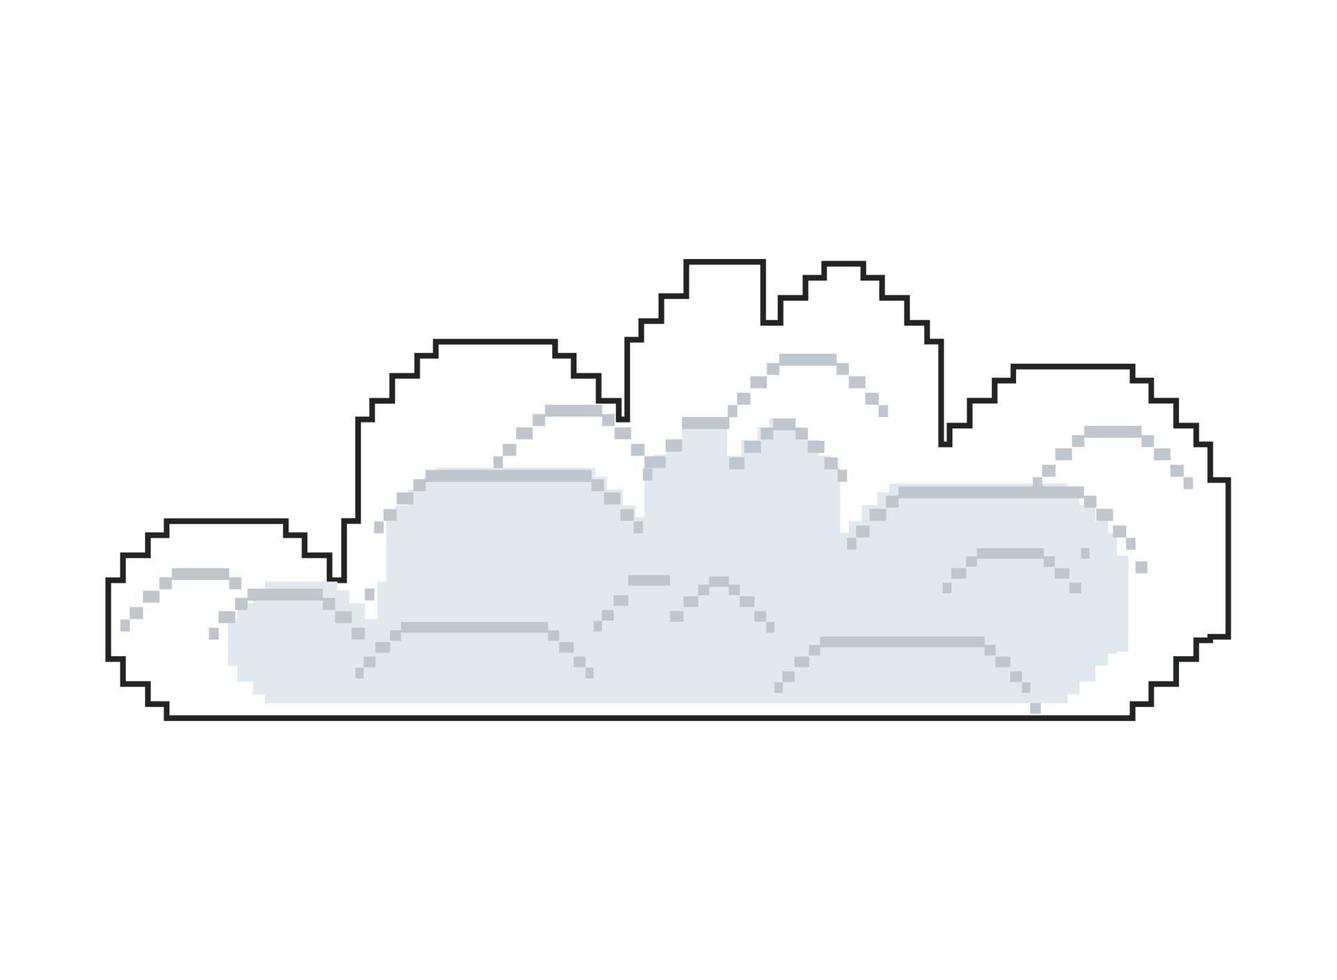 cloud sky pixel art style vector